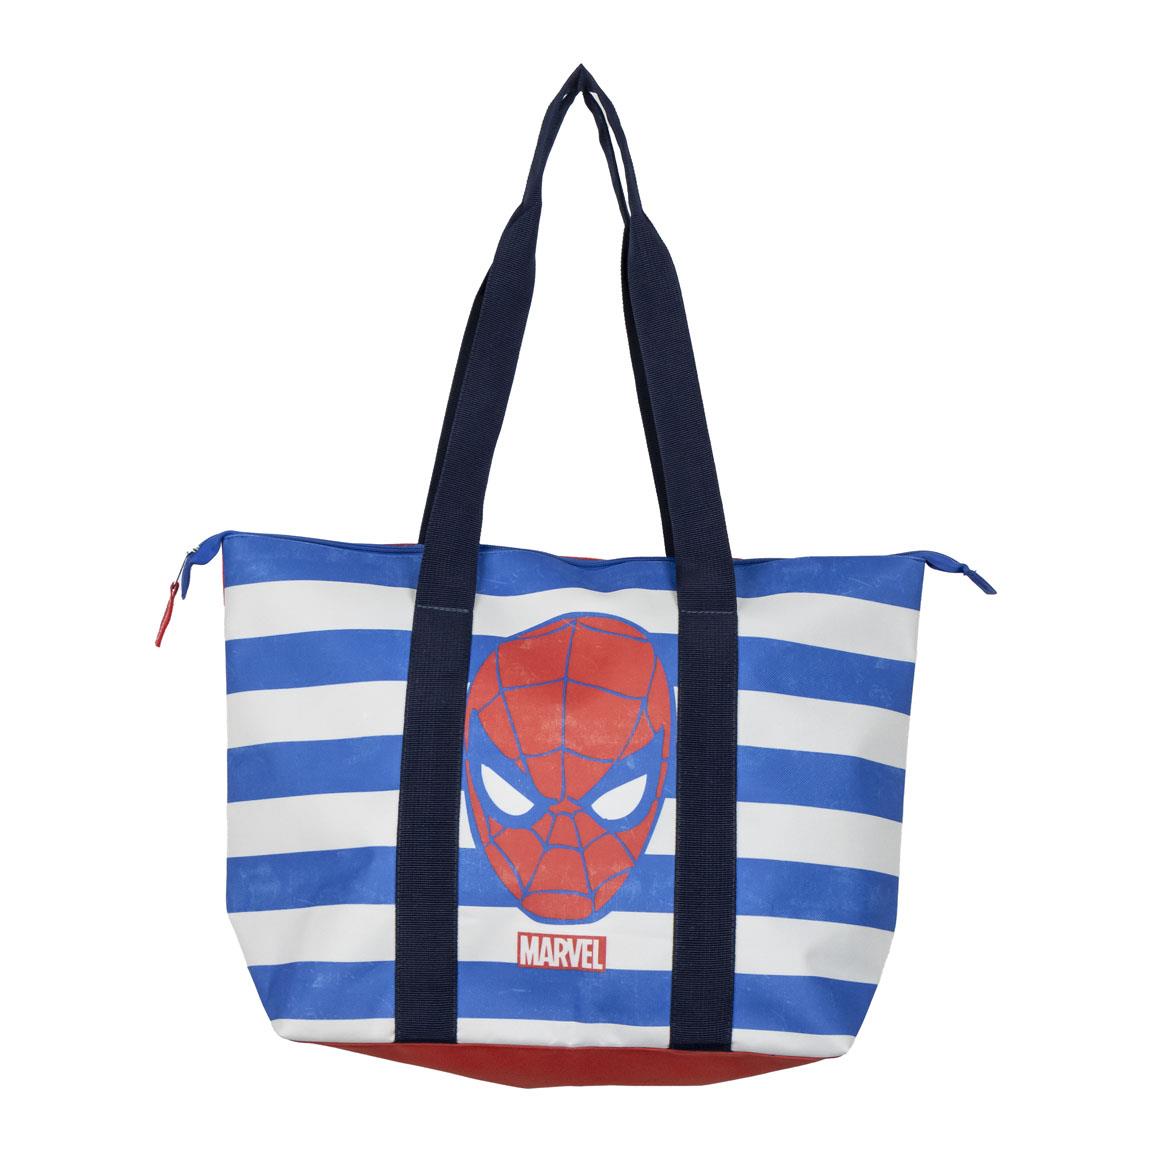 Marvel Beach Bag